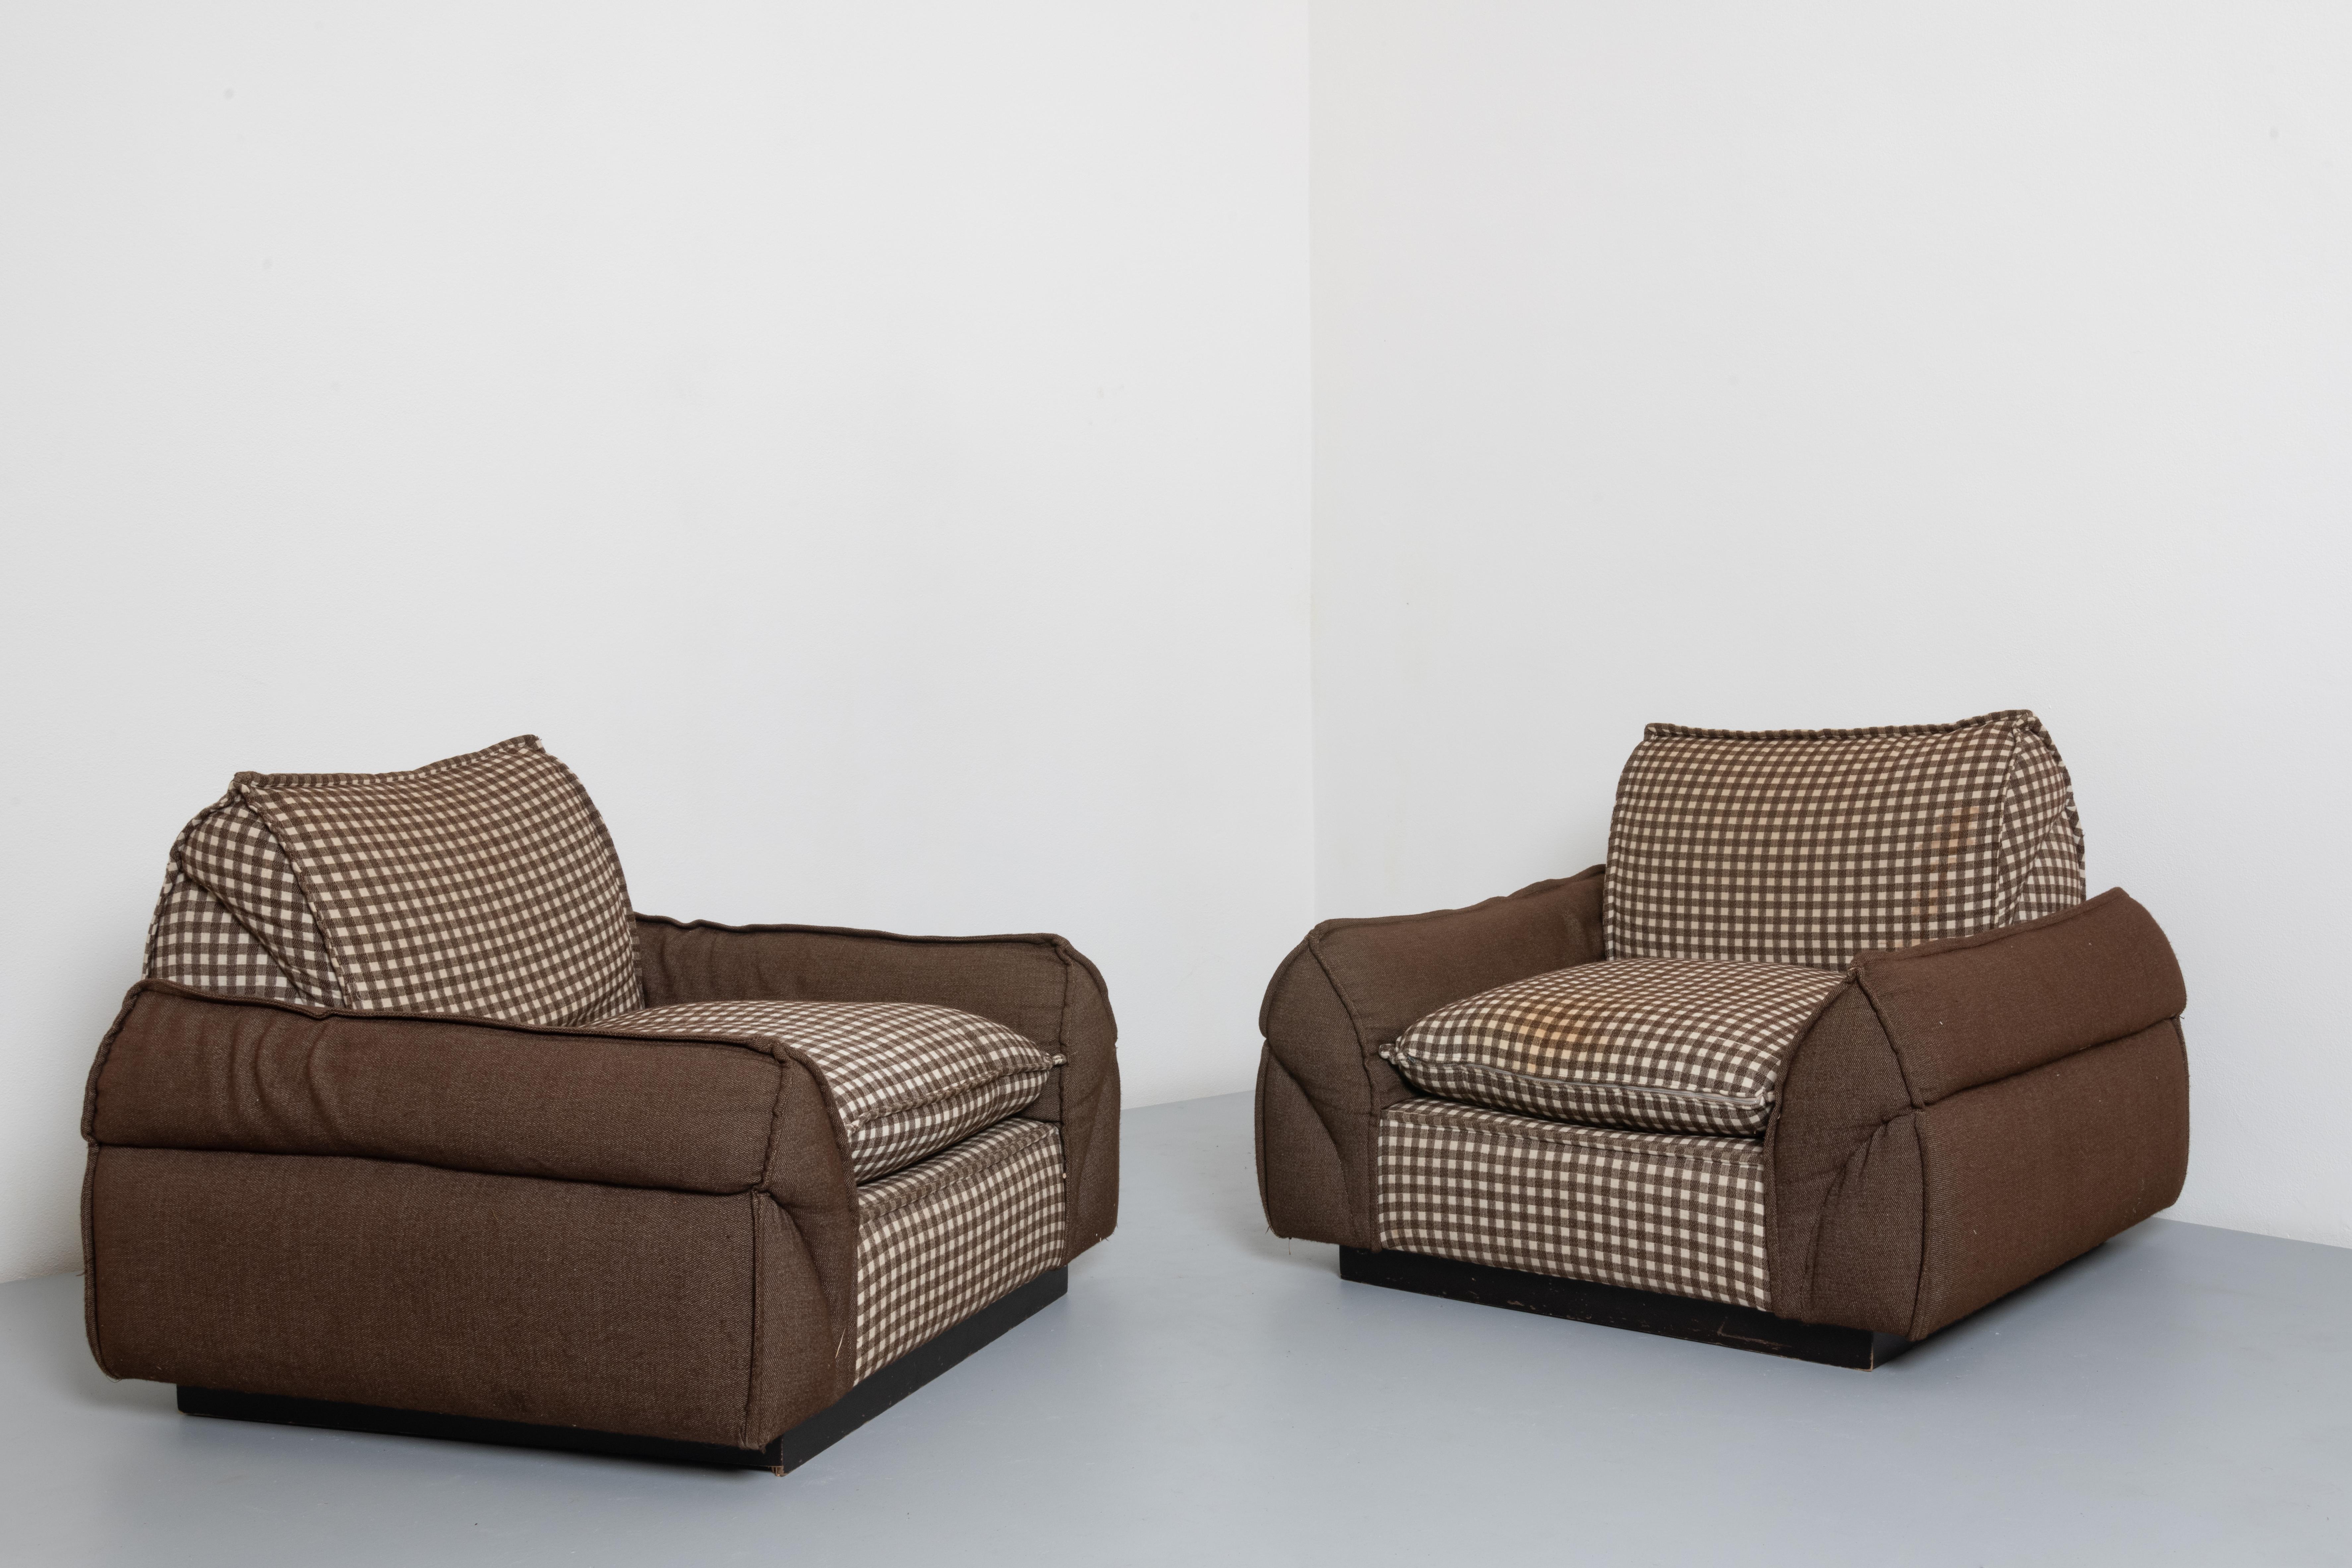 Italienisch Bulky Paar Lounge-Stühle in Stoff.
Diese beiden Sessel können in einem modernen Wohnzimmer eingesetzt werden und bieten Komfort und einen Hauch von Stil. Sie sind bequeme und robuste Sessel mit einer starken Persönlichkeit. Die